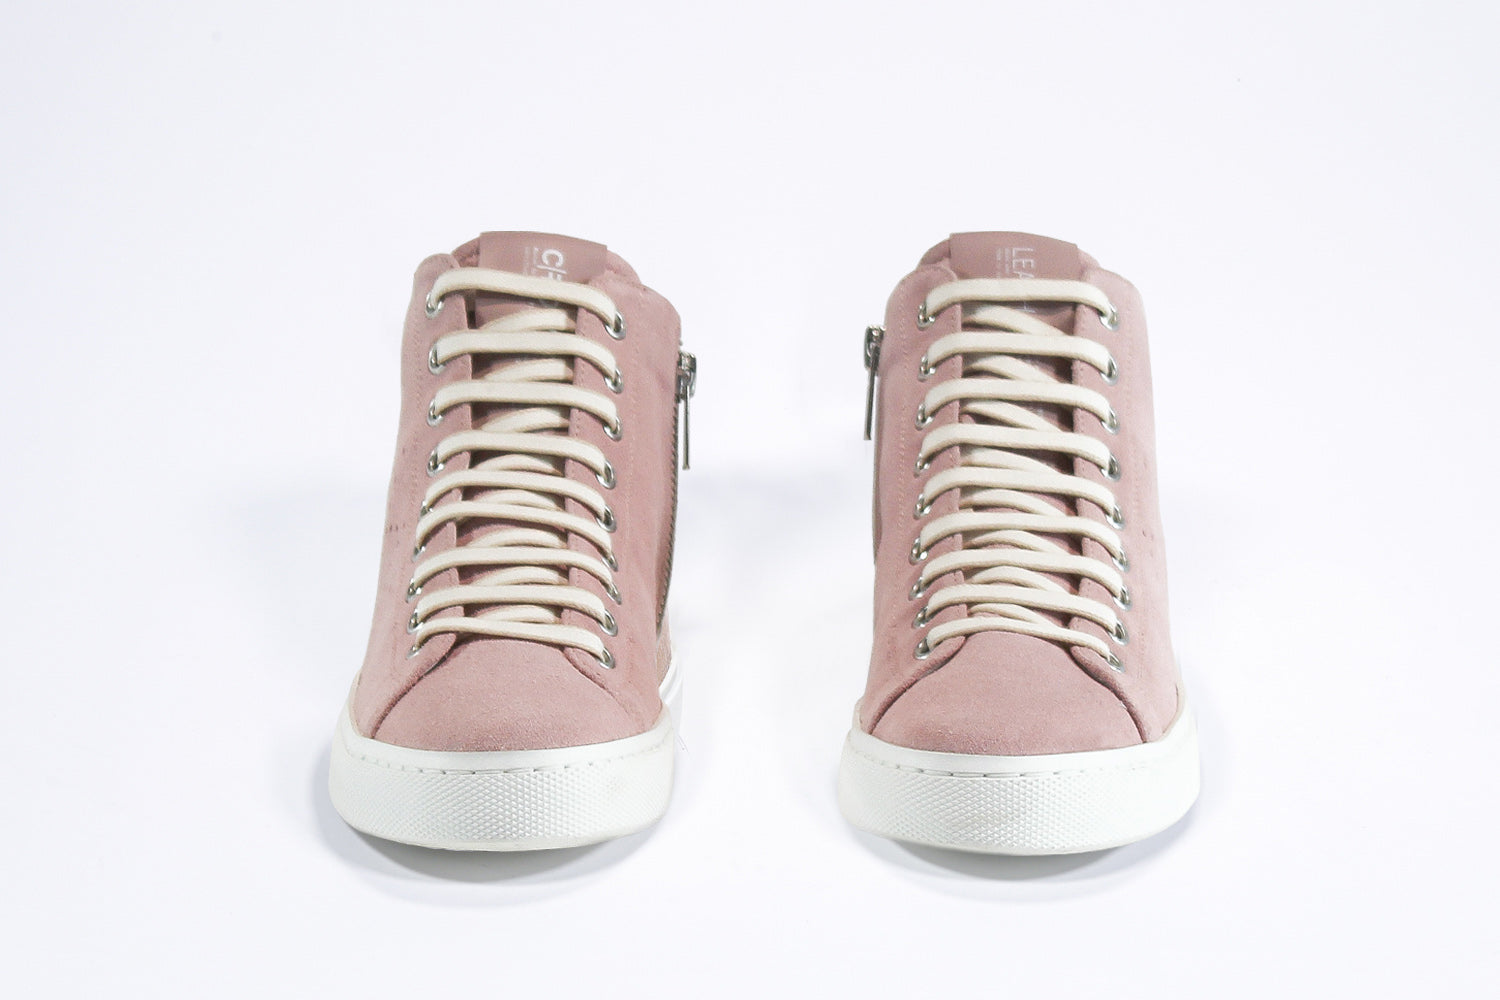 Vorderansicht des Mid-Tops sneaker aus rosa Wildleder und Leder, mit Innenreißverschluss und weißer Sohle.